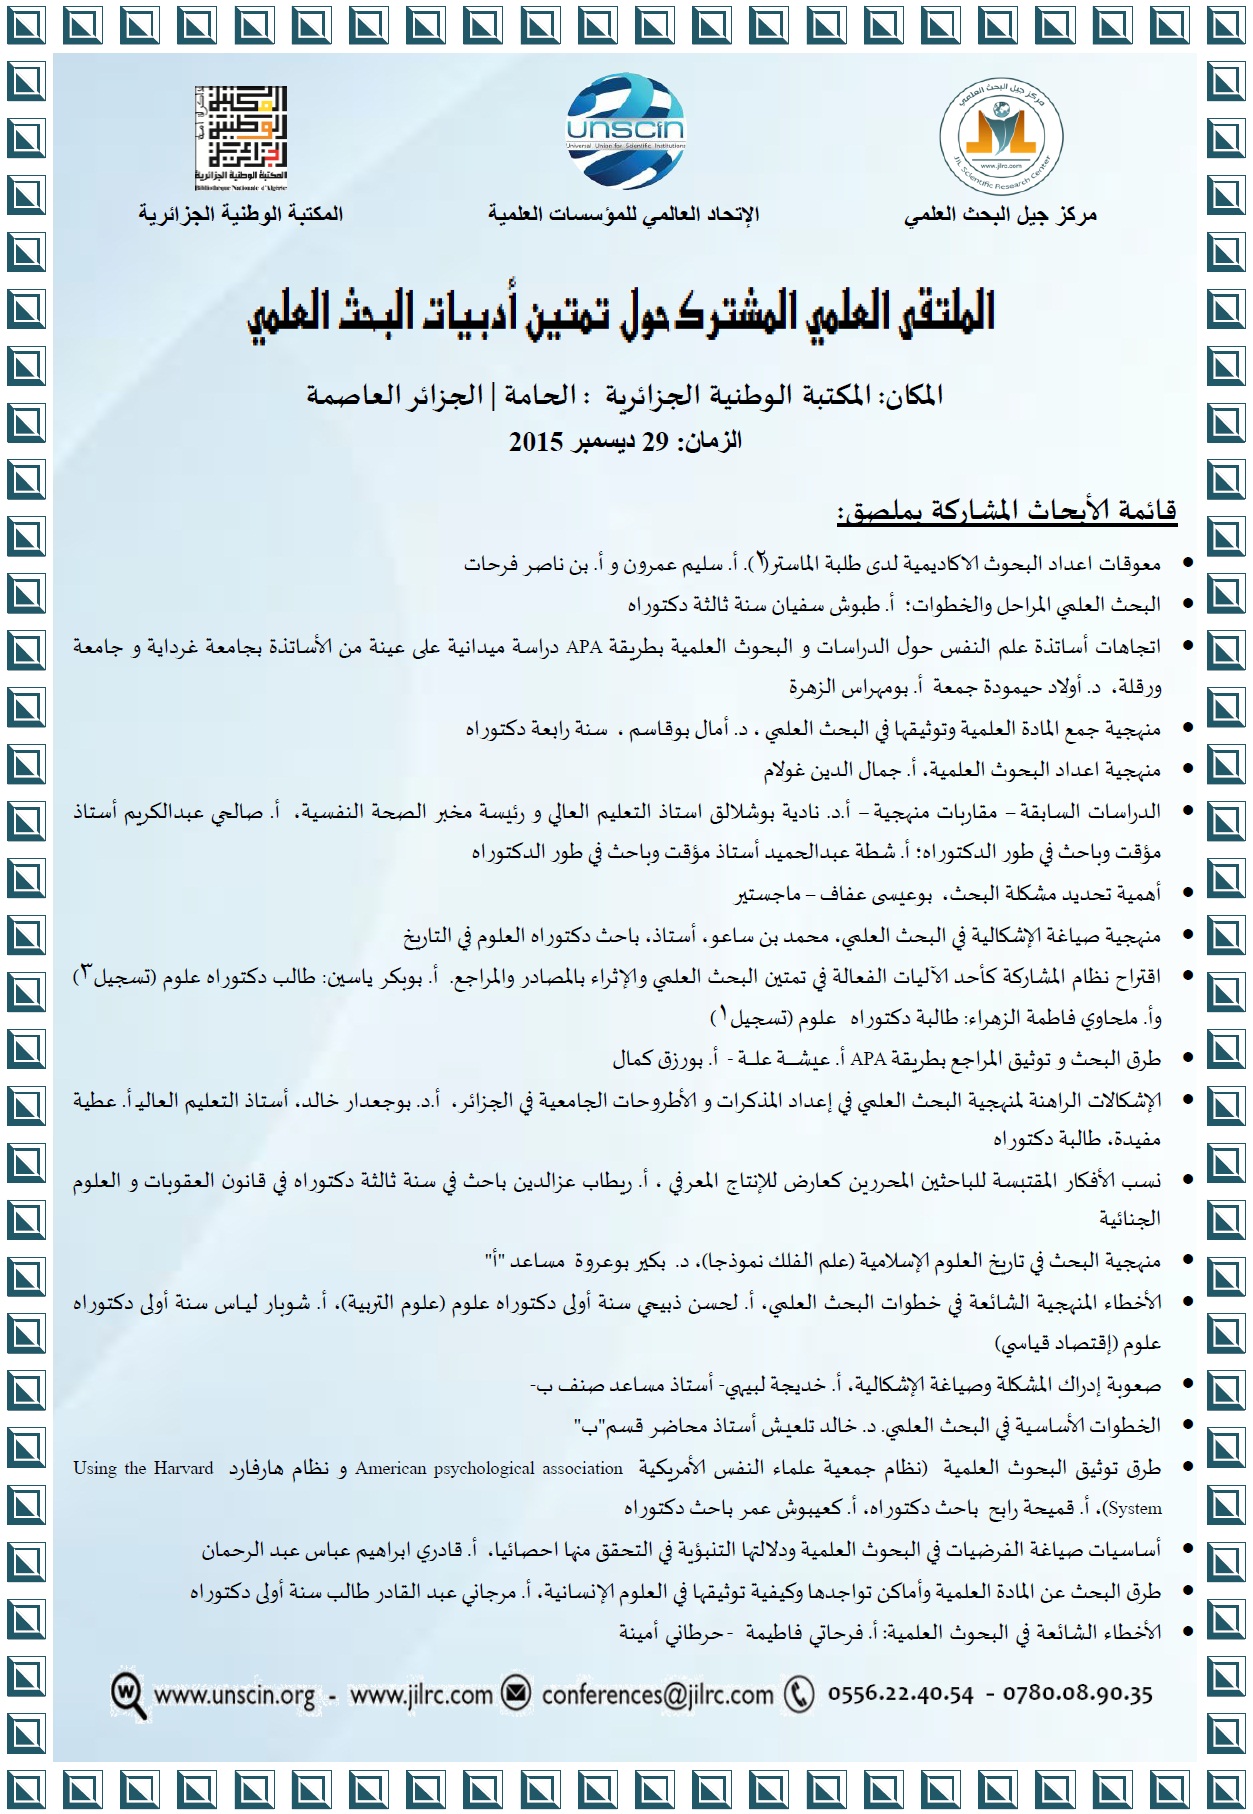 قائمة نهائية بالمشاركين بملصق